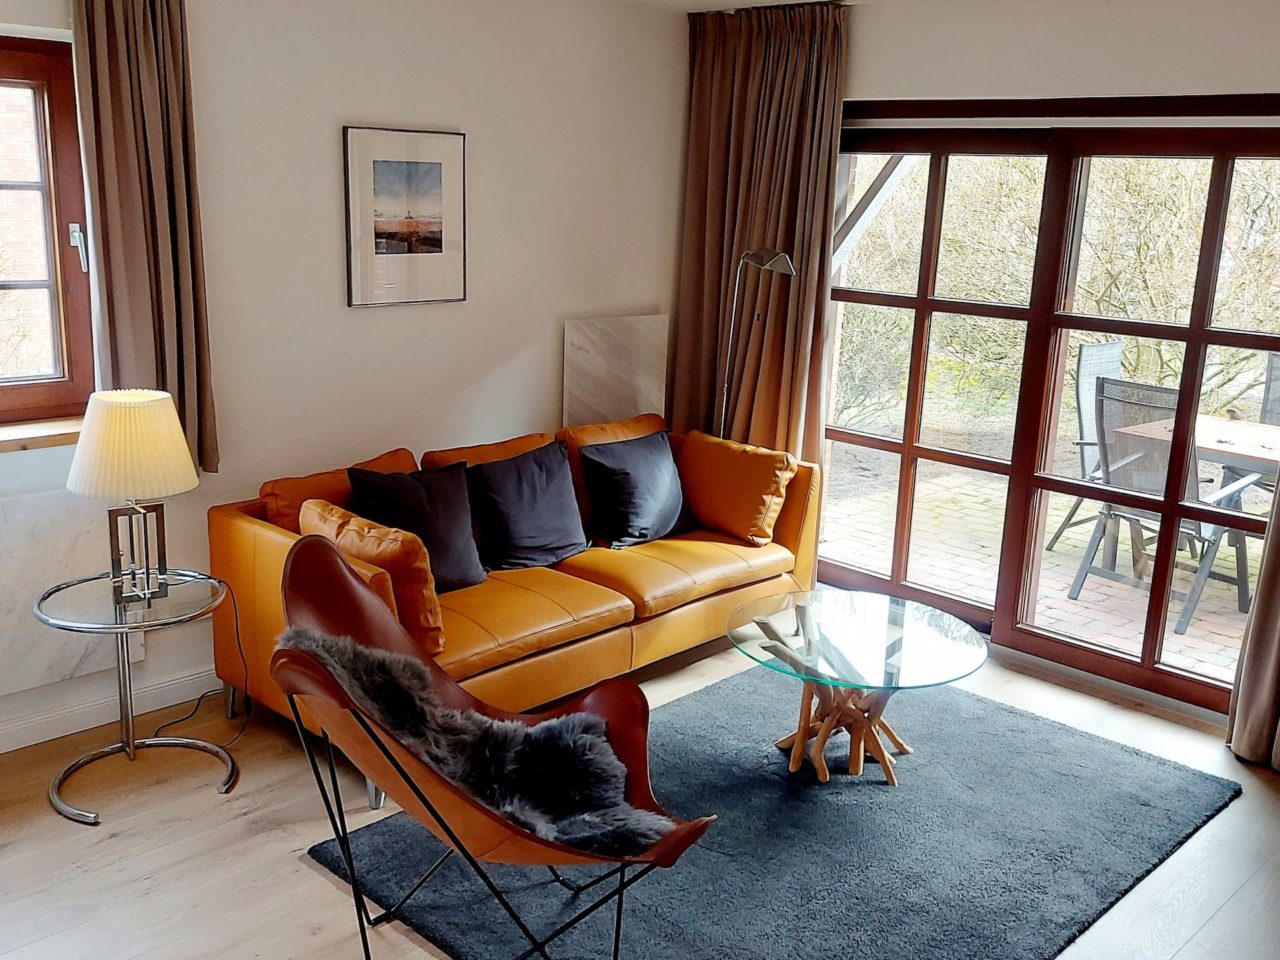 Wohnzimmer in der Ferienwohnung mit Terasse in Westerland auf Sylt